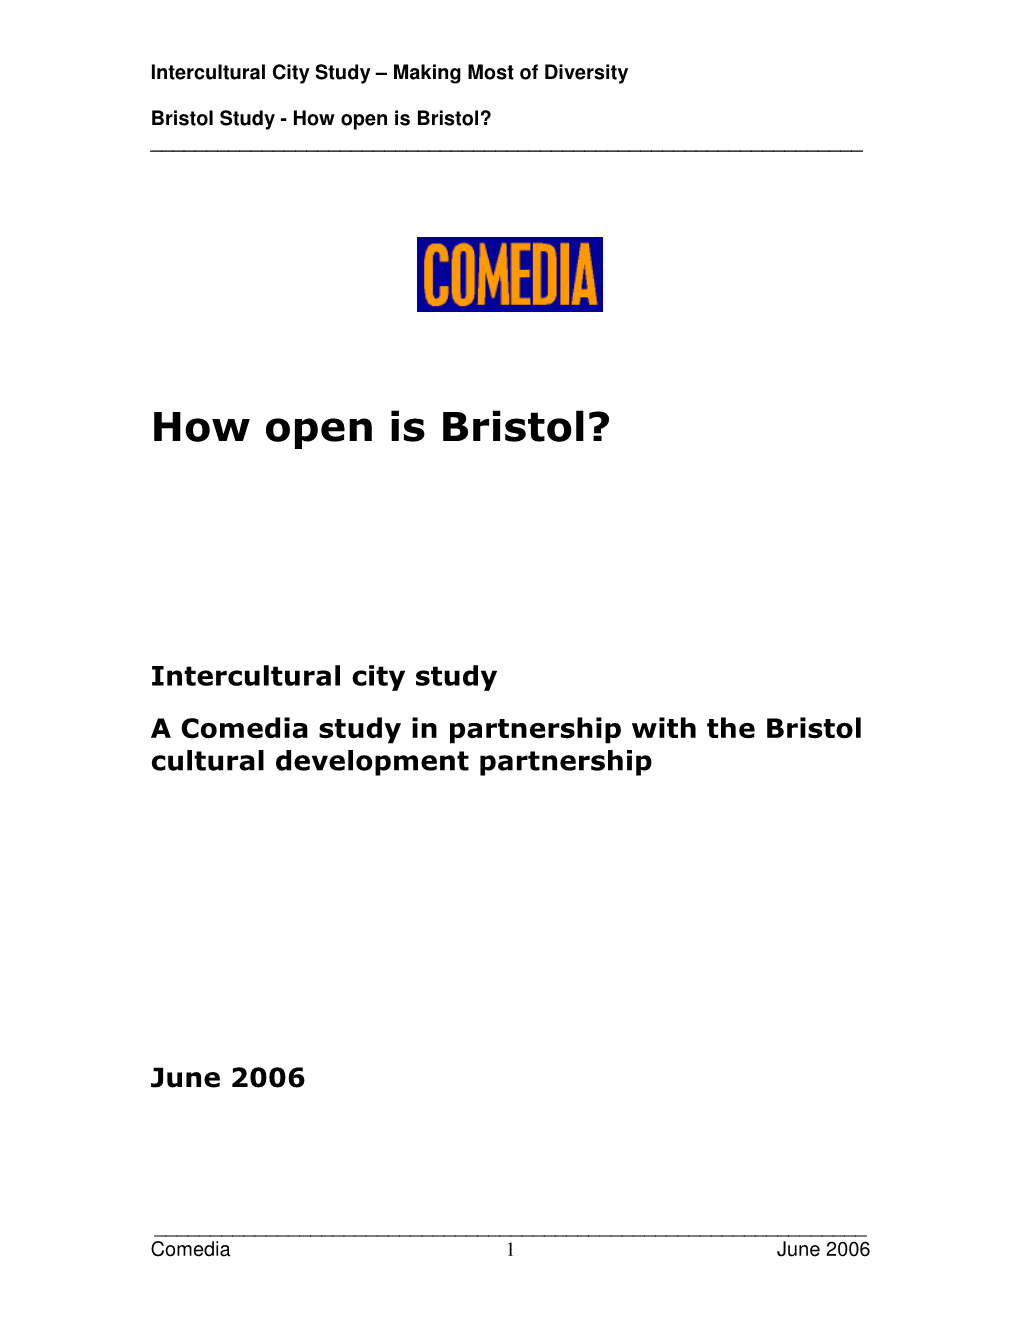 How Open Is Bristol? ______